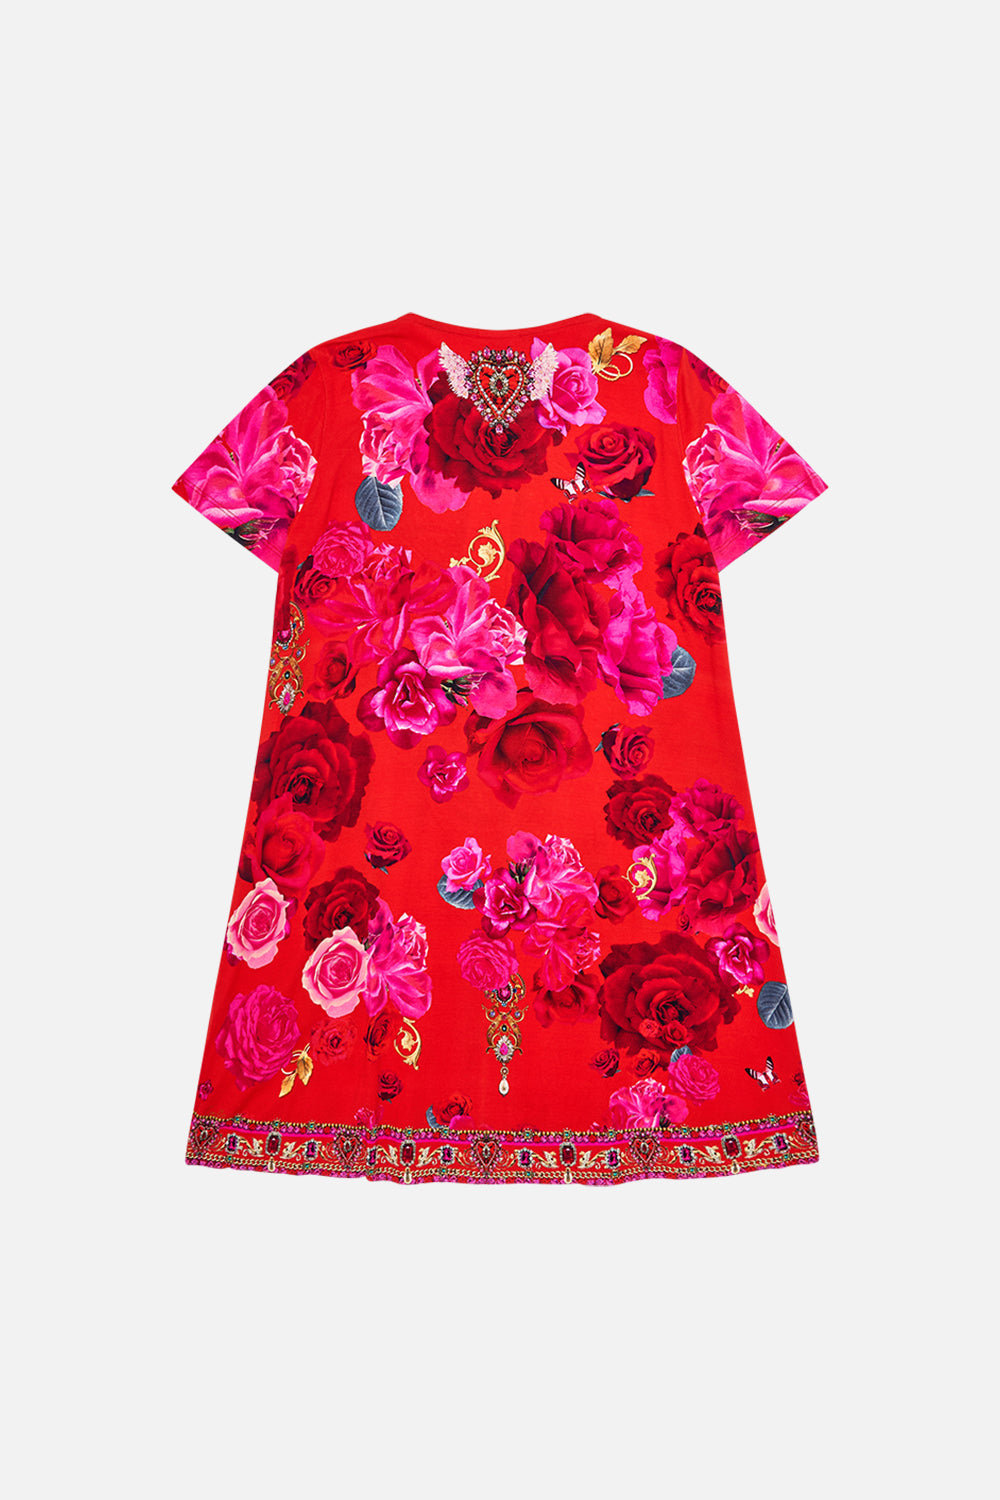 Milla by CAMILLA kids t shirt dress in An Italian Rosa print